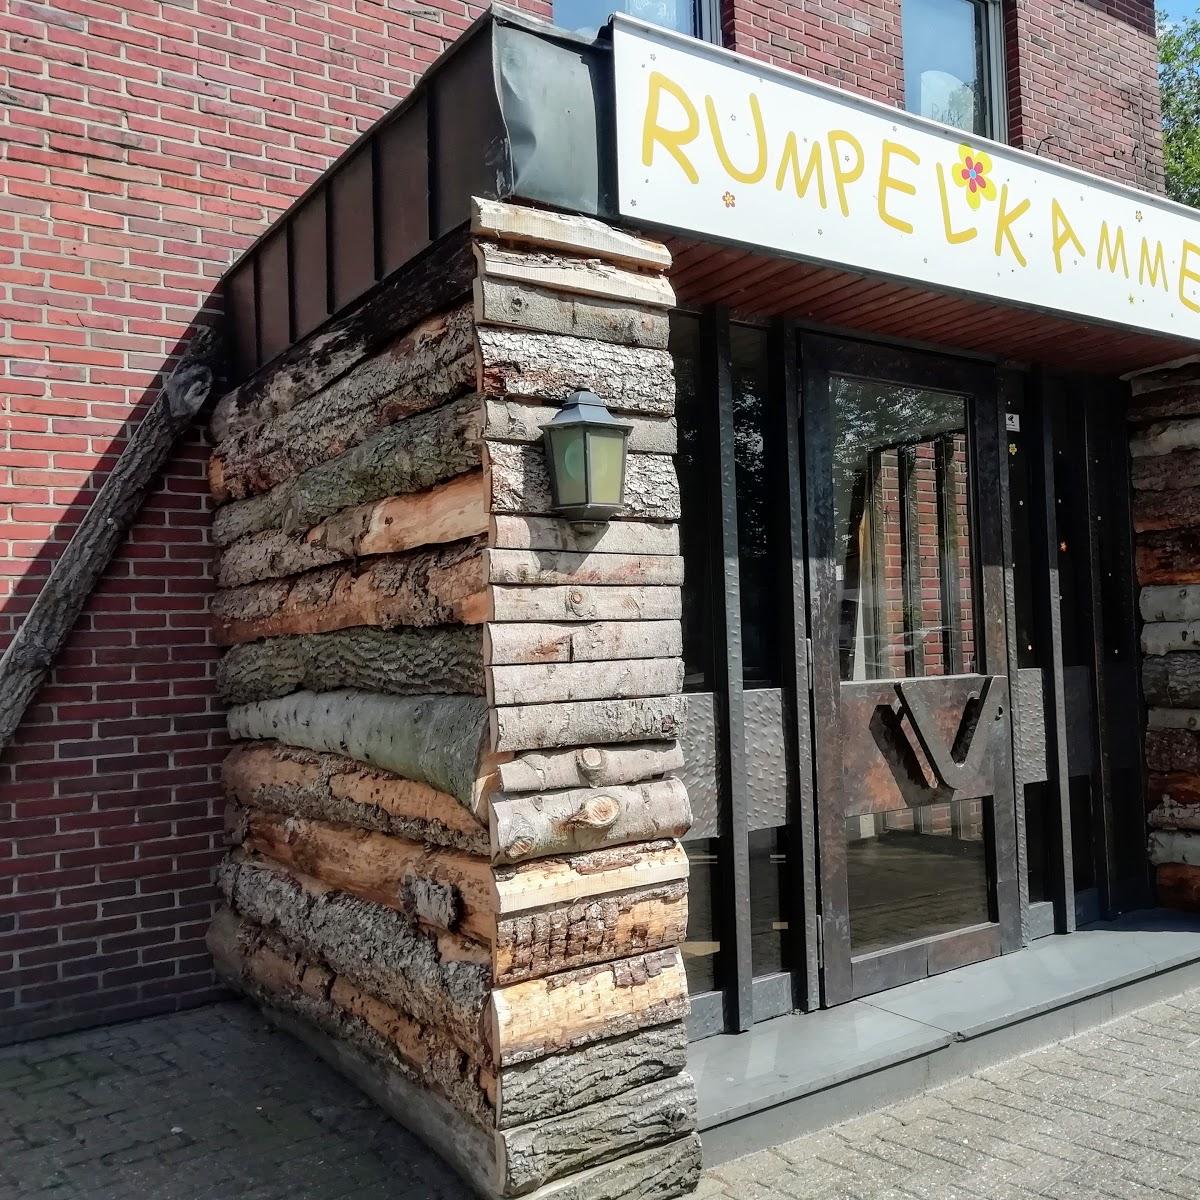 Restaurant "Rumpelkammer" in Stadtlohn